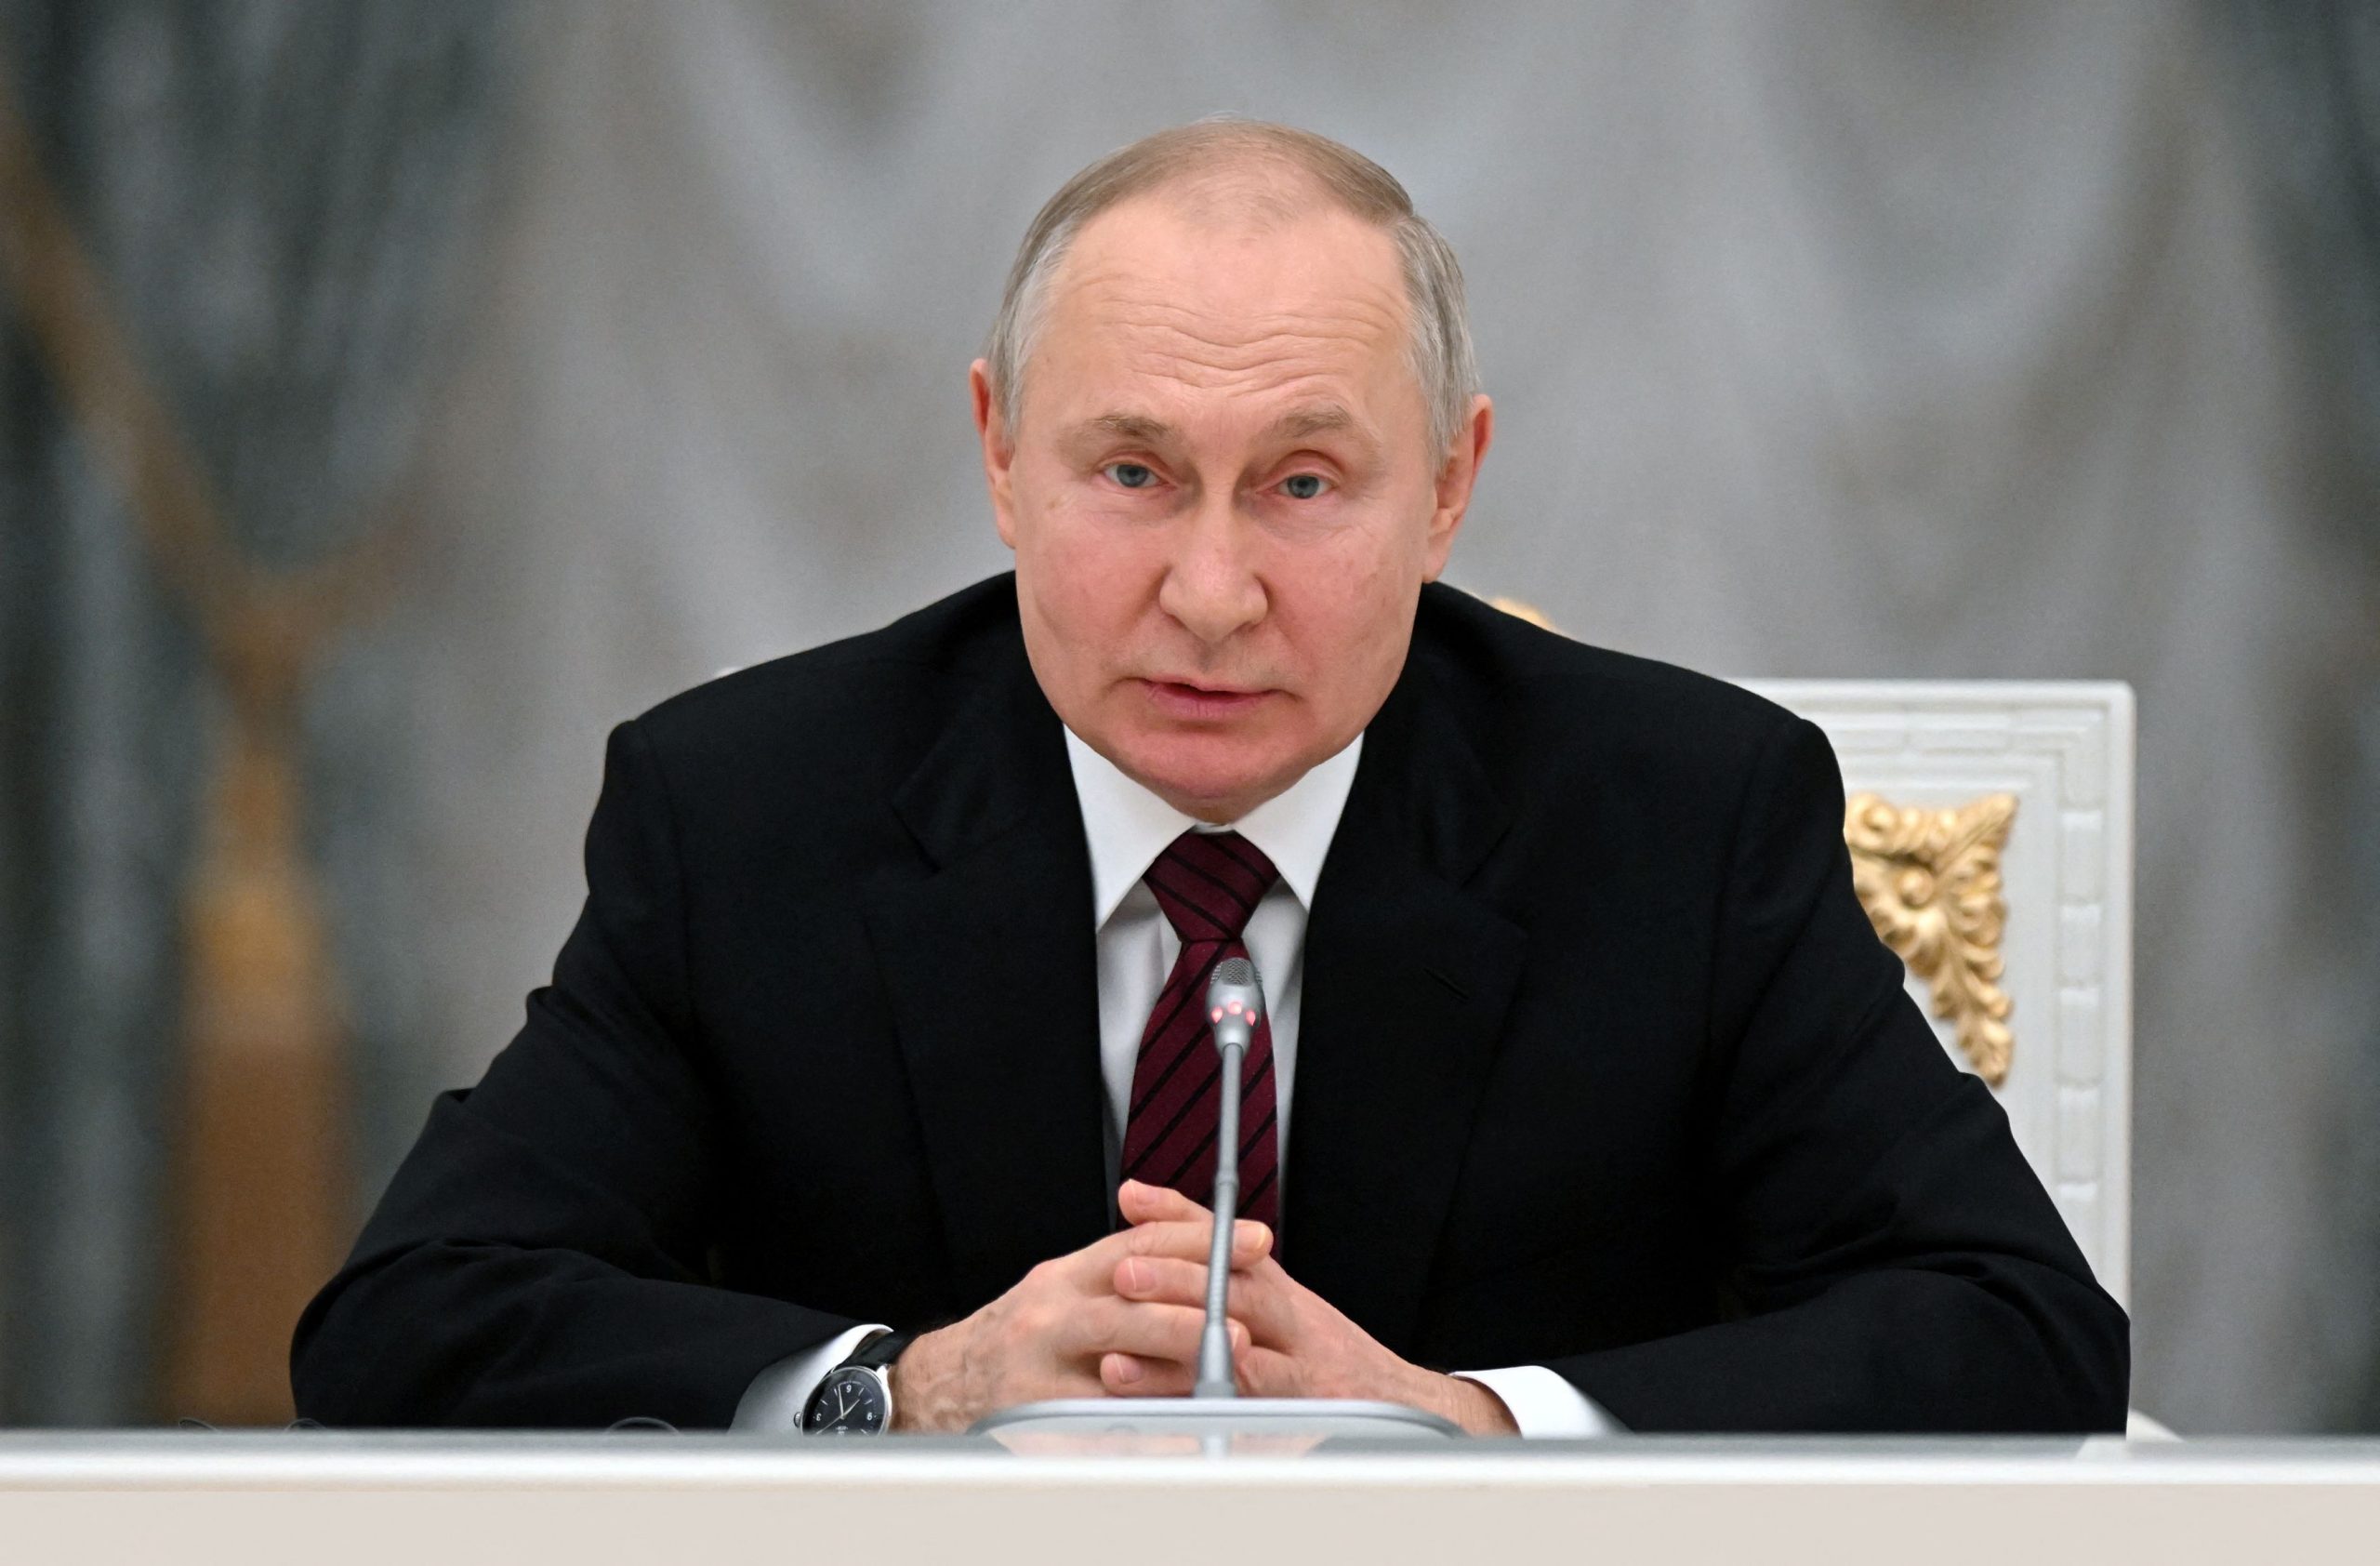 Β.Πούτιν: «Η Ρωσία θα δημιουργήσει μια “νεκρή/ουδέτερη ζώνη” με την Ουκρανία για να προστατεύσει την επικράτειά της»